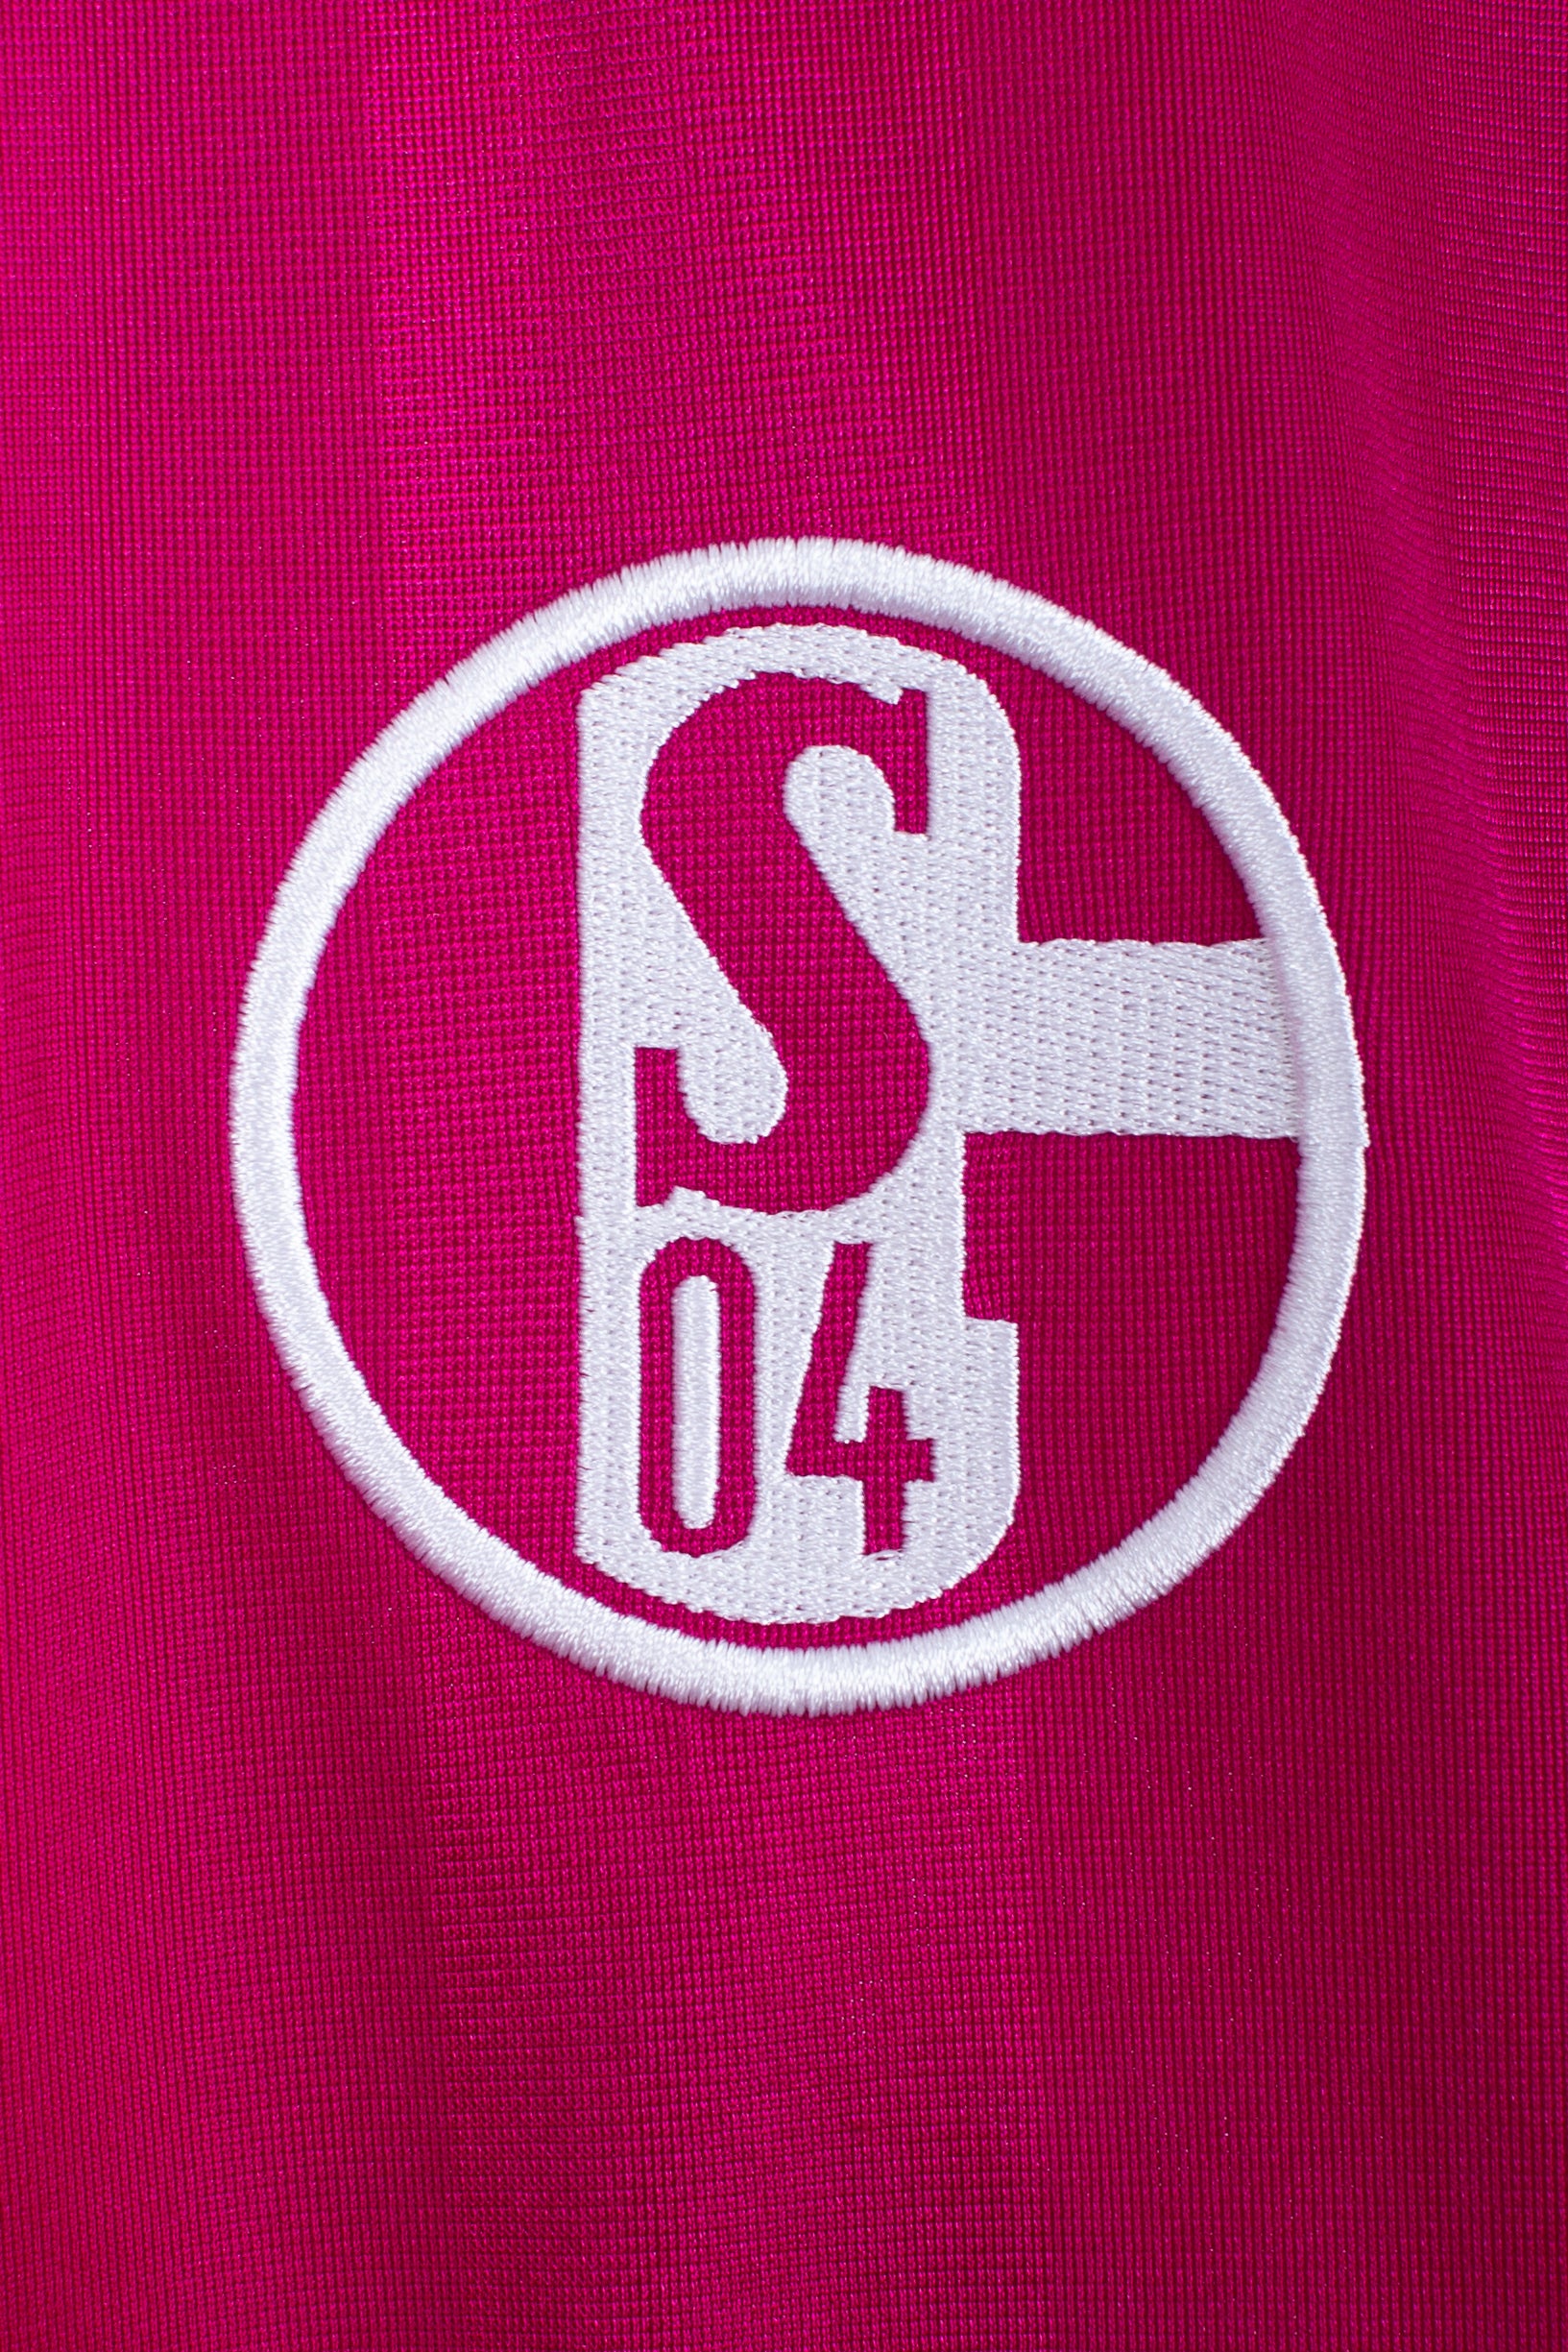 Schalke 04 2012/14 Third (Holtby #10) (M)